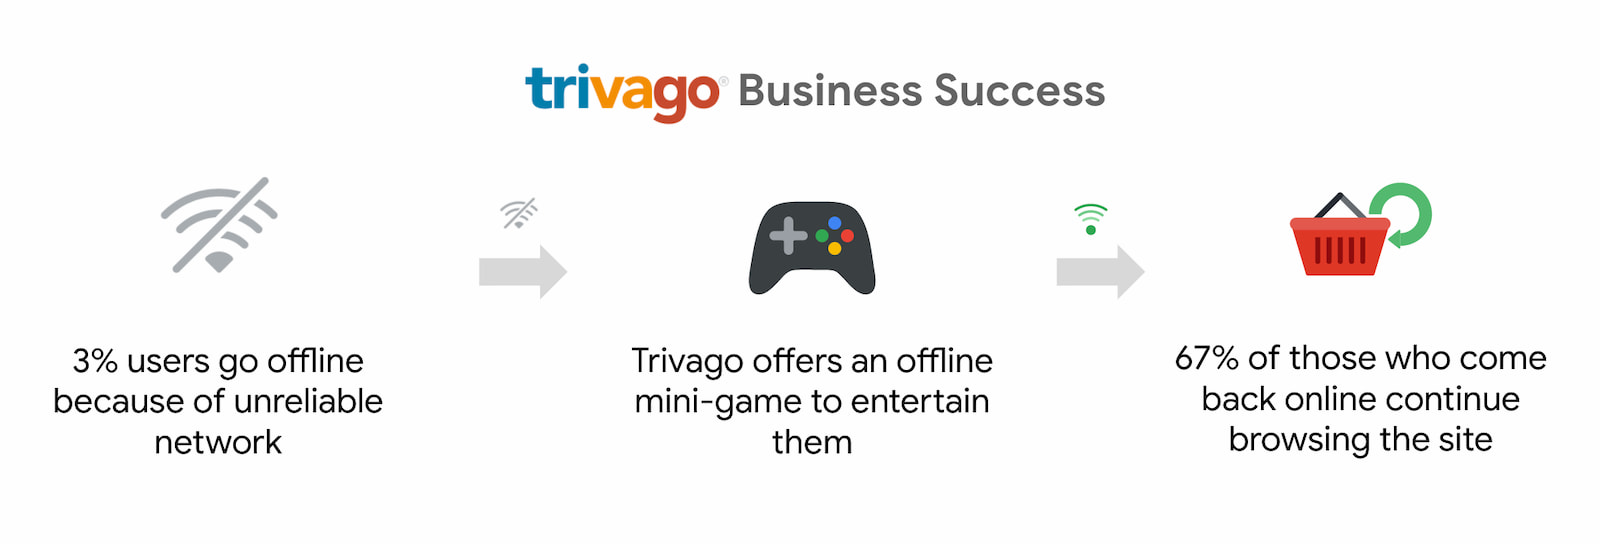 讓 Trivago 的使用者回訪後繼續瀏覽網路的使用者增加了 67%。